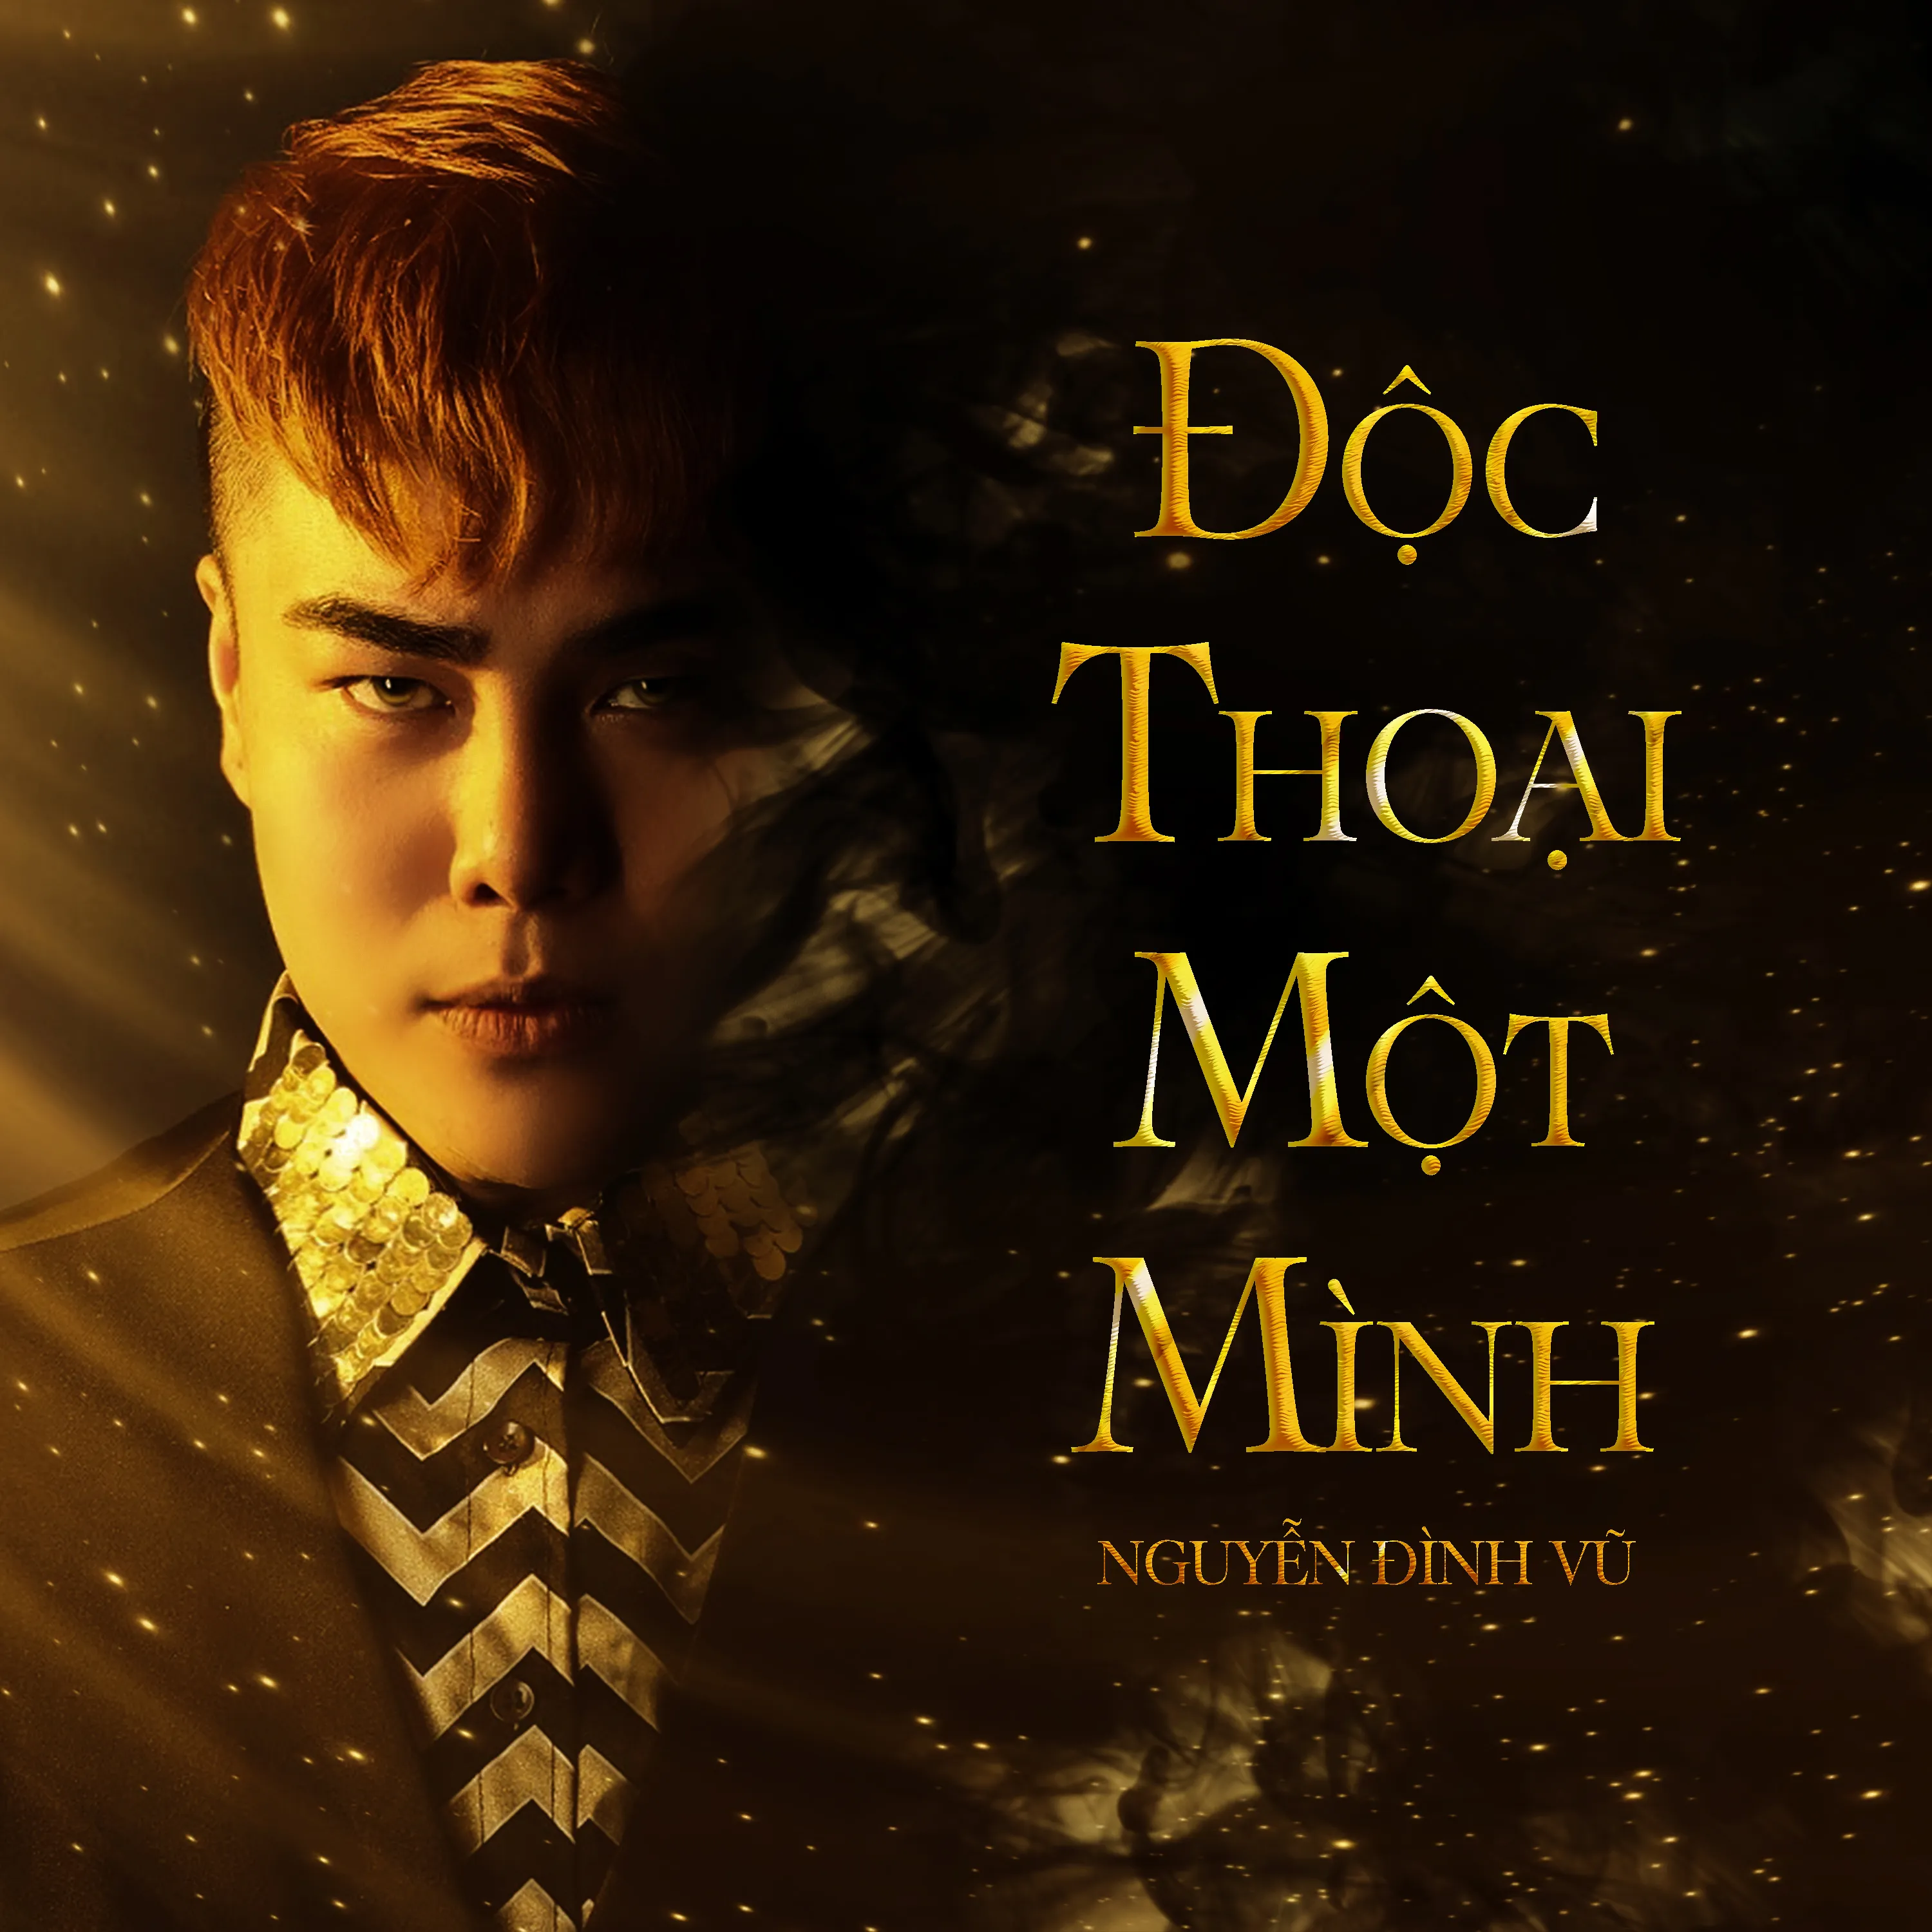 VOH-Doc-Thoai-Mot-Minh-Nguyen-Dinh-Vu-10